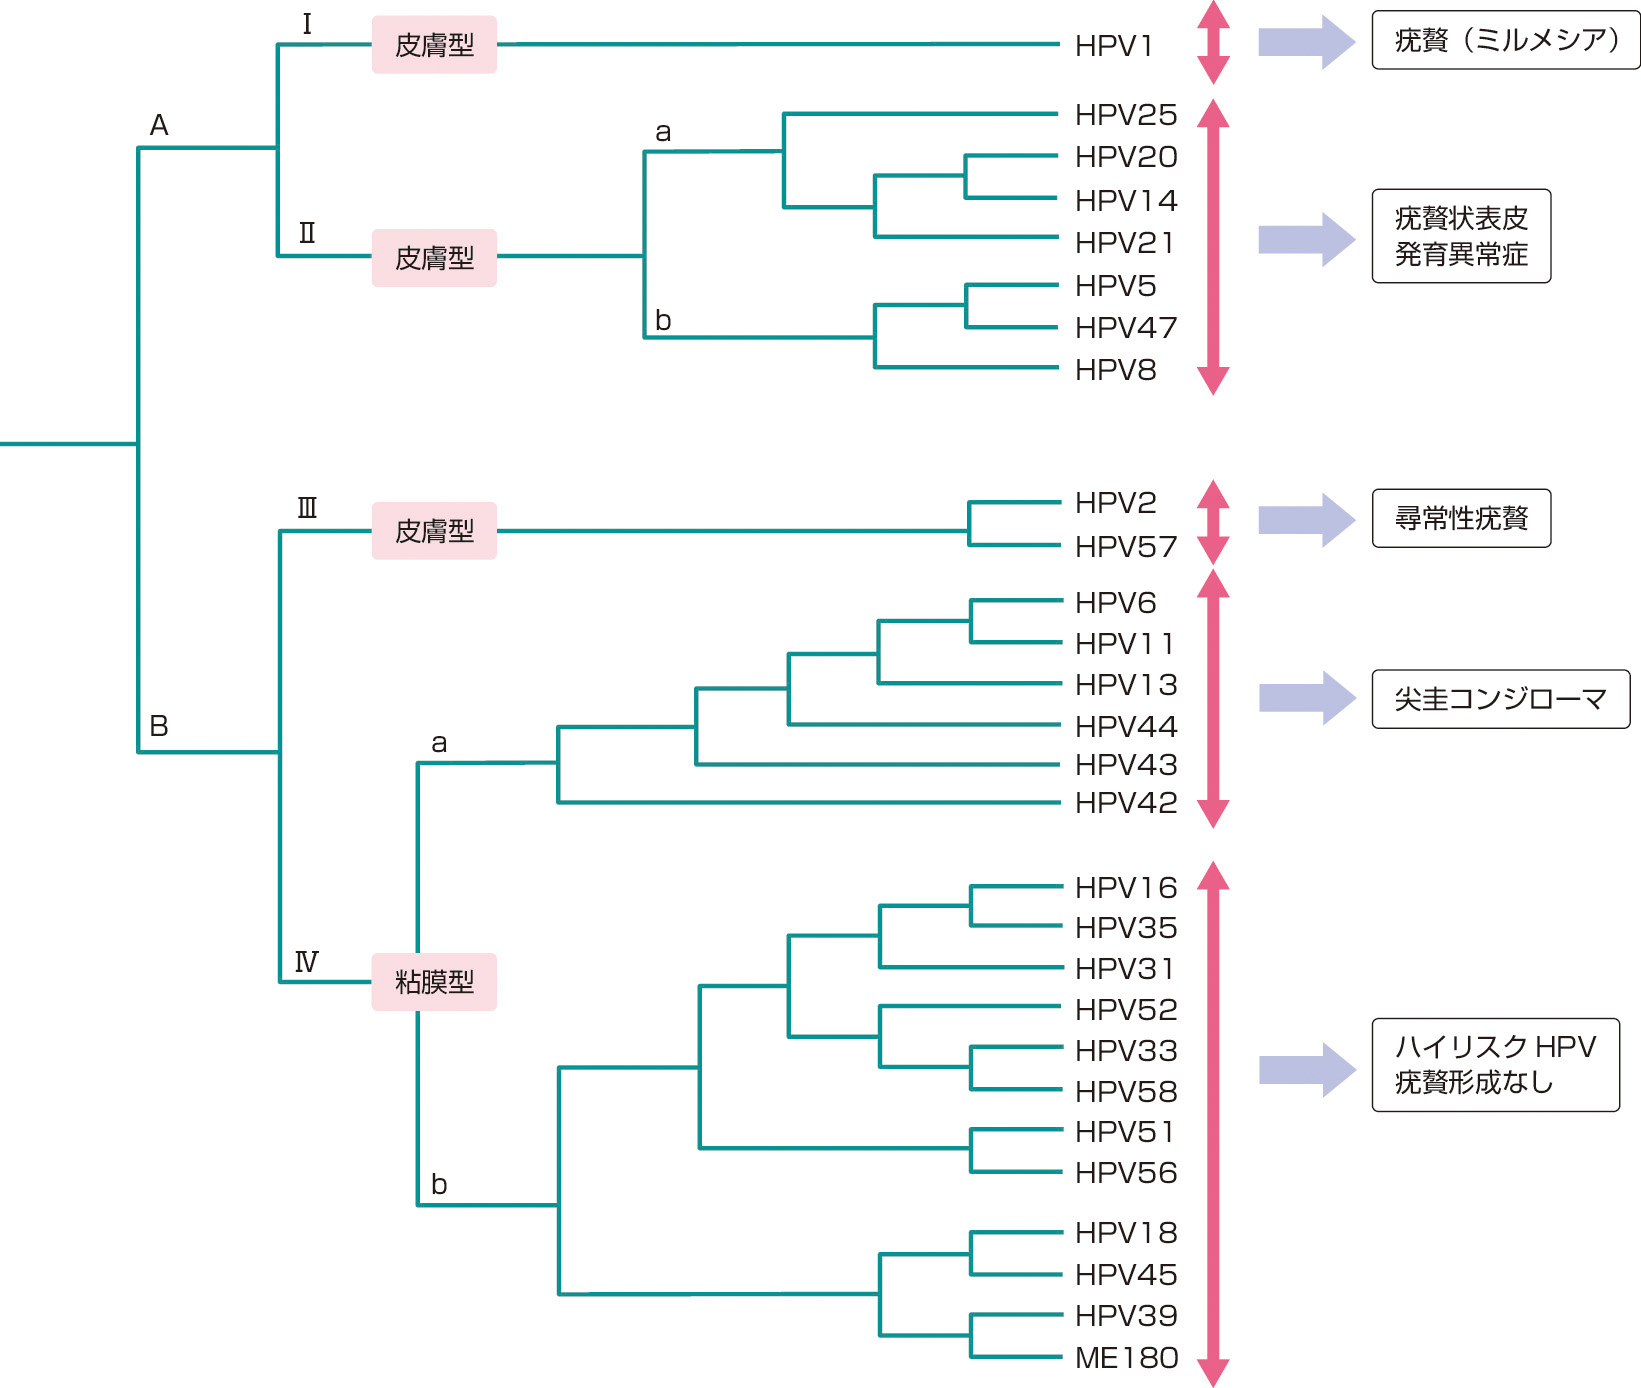 ⓔ図7-10-2　HPV遺伝子型 (タイプ) の系統樹と関連疾患 